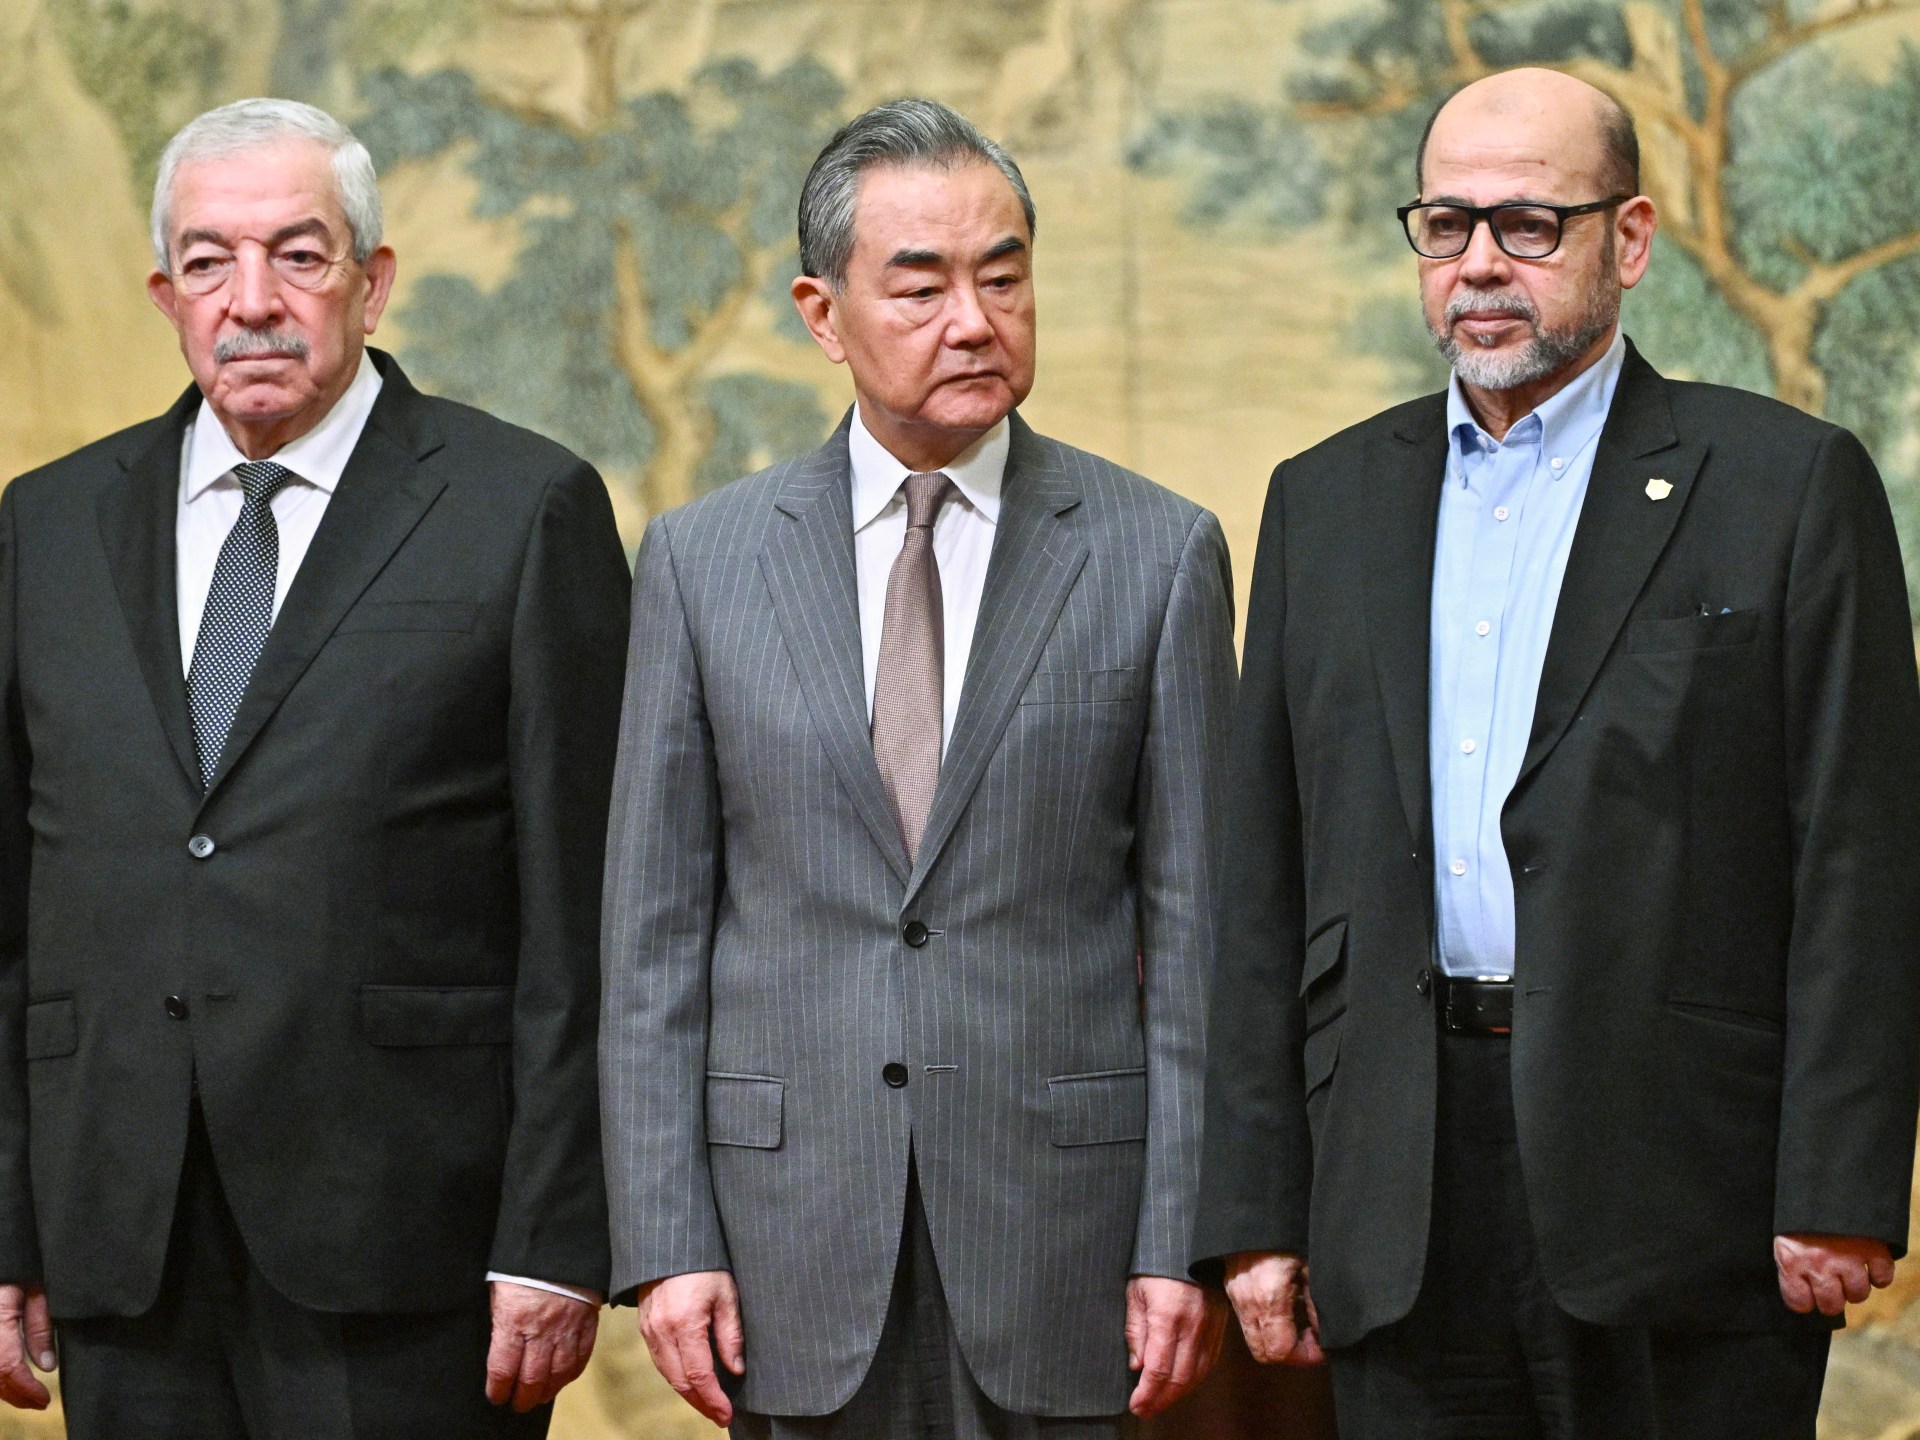 Palestinian rivals Hamas and Fatah sign unity deal brokered by China | Hamas News